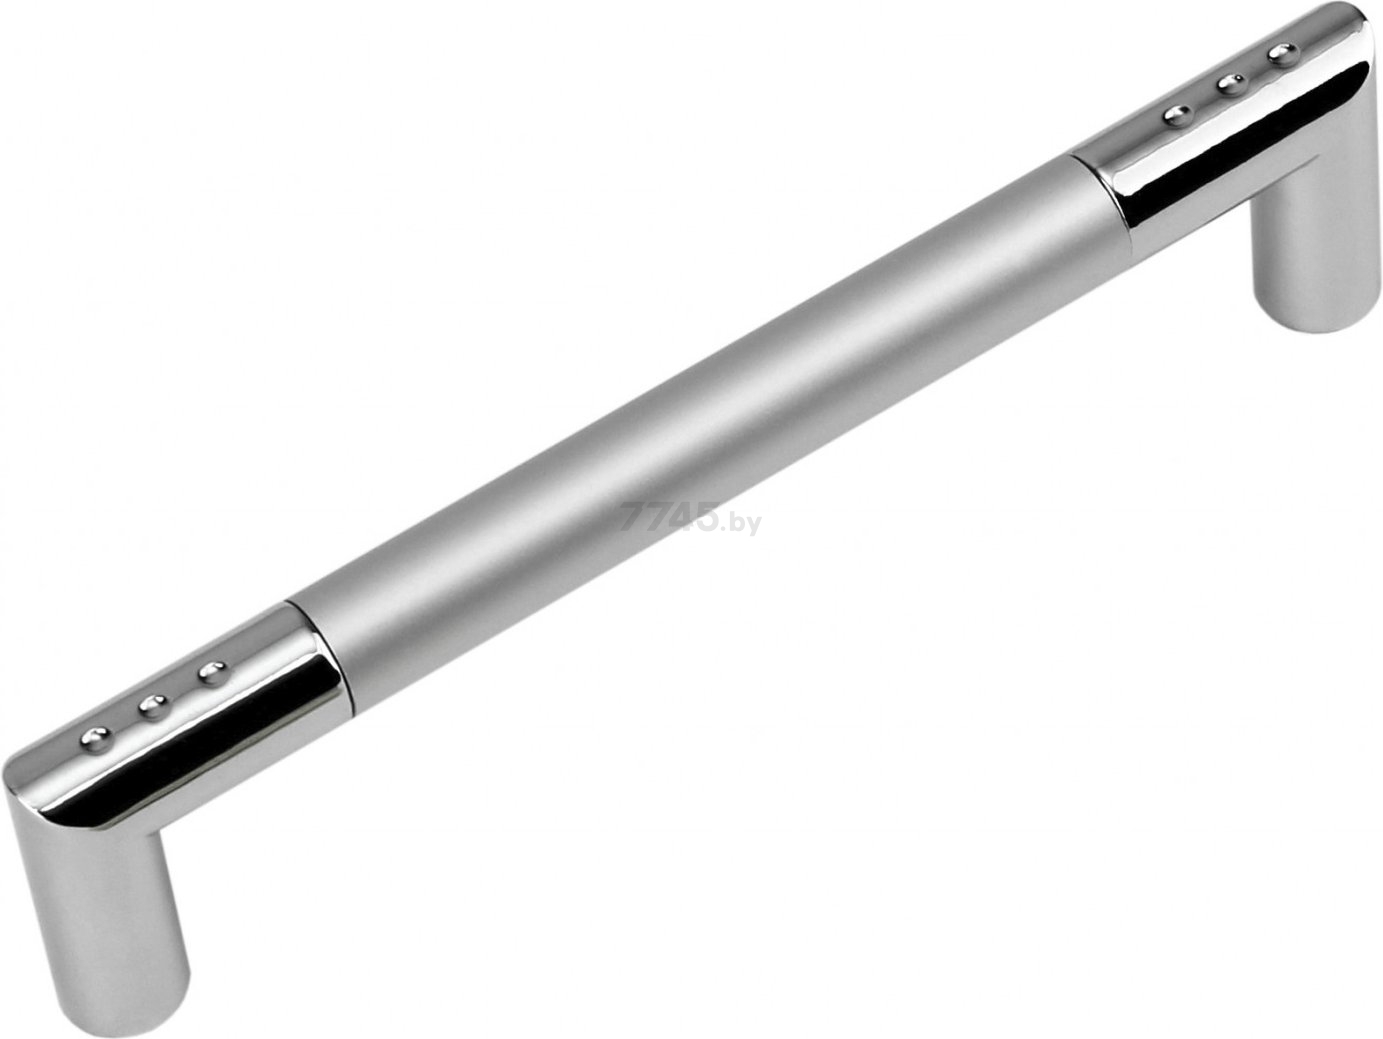 Ручка мебельная скоба BOYARD S5441/160 sc RS054CP/SC.4/160 хром полированный